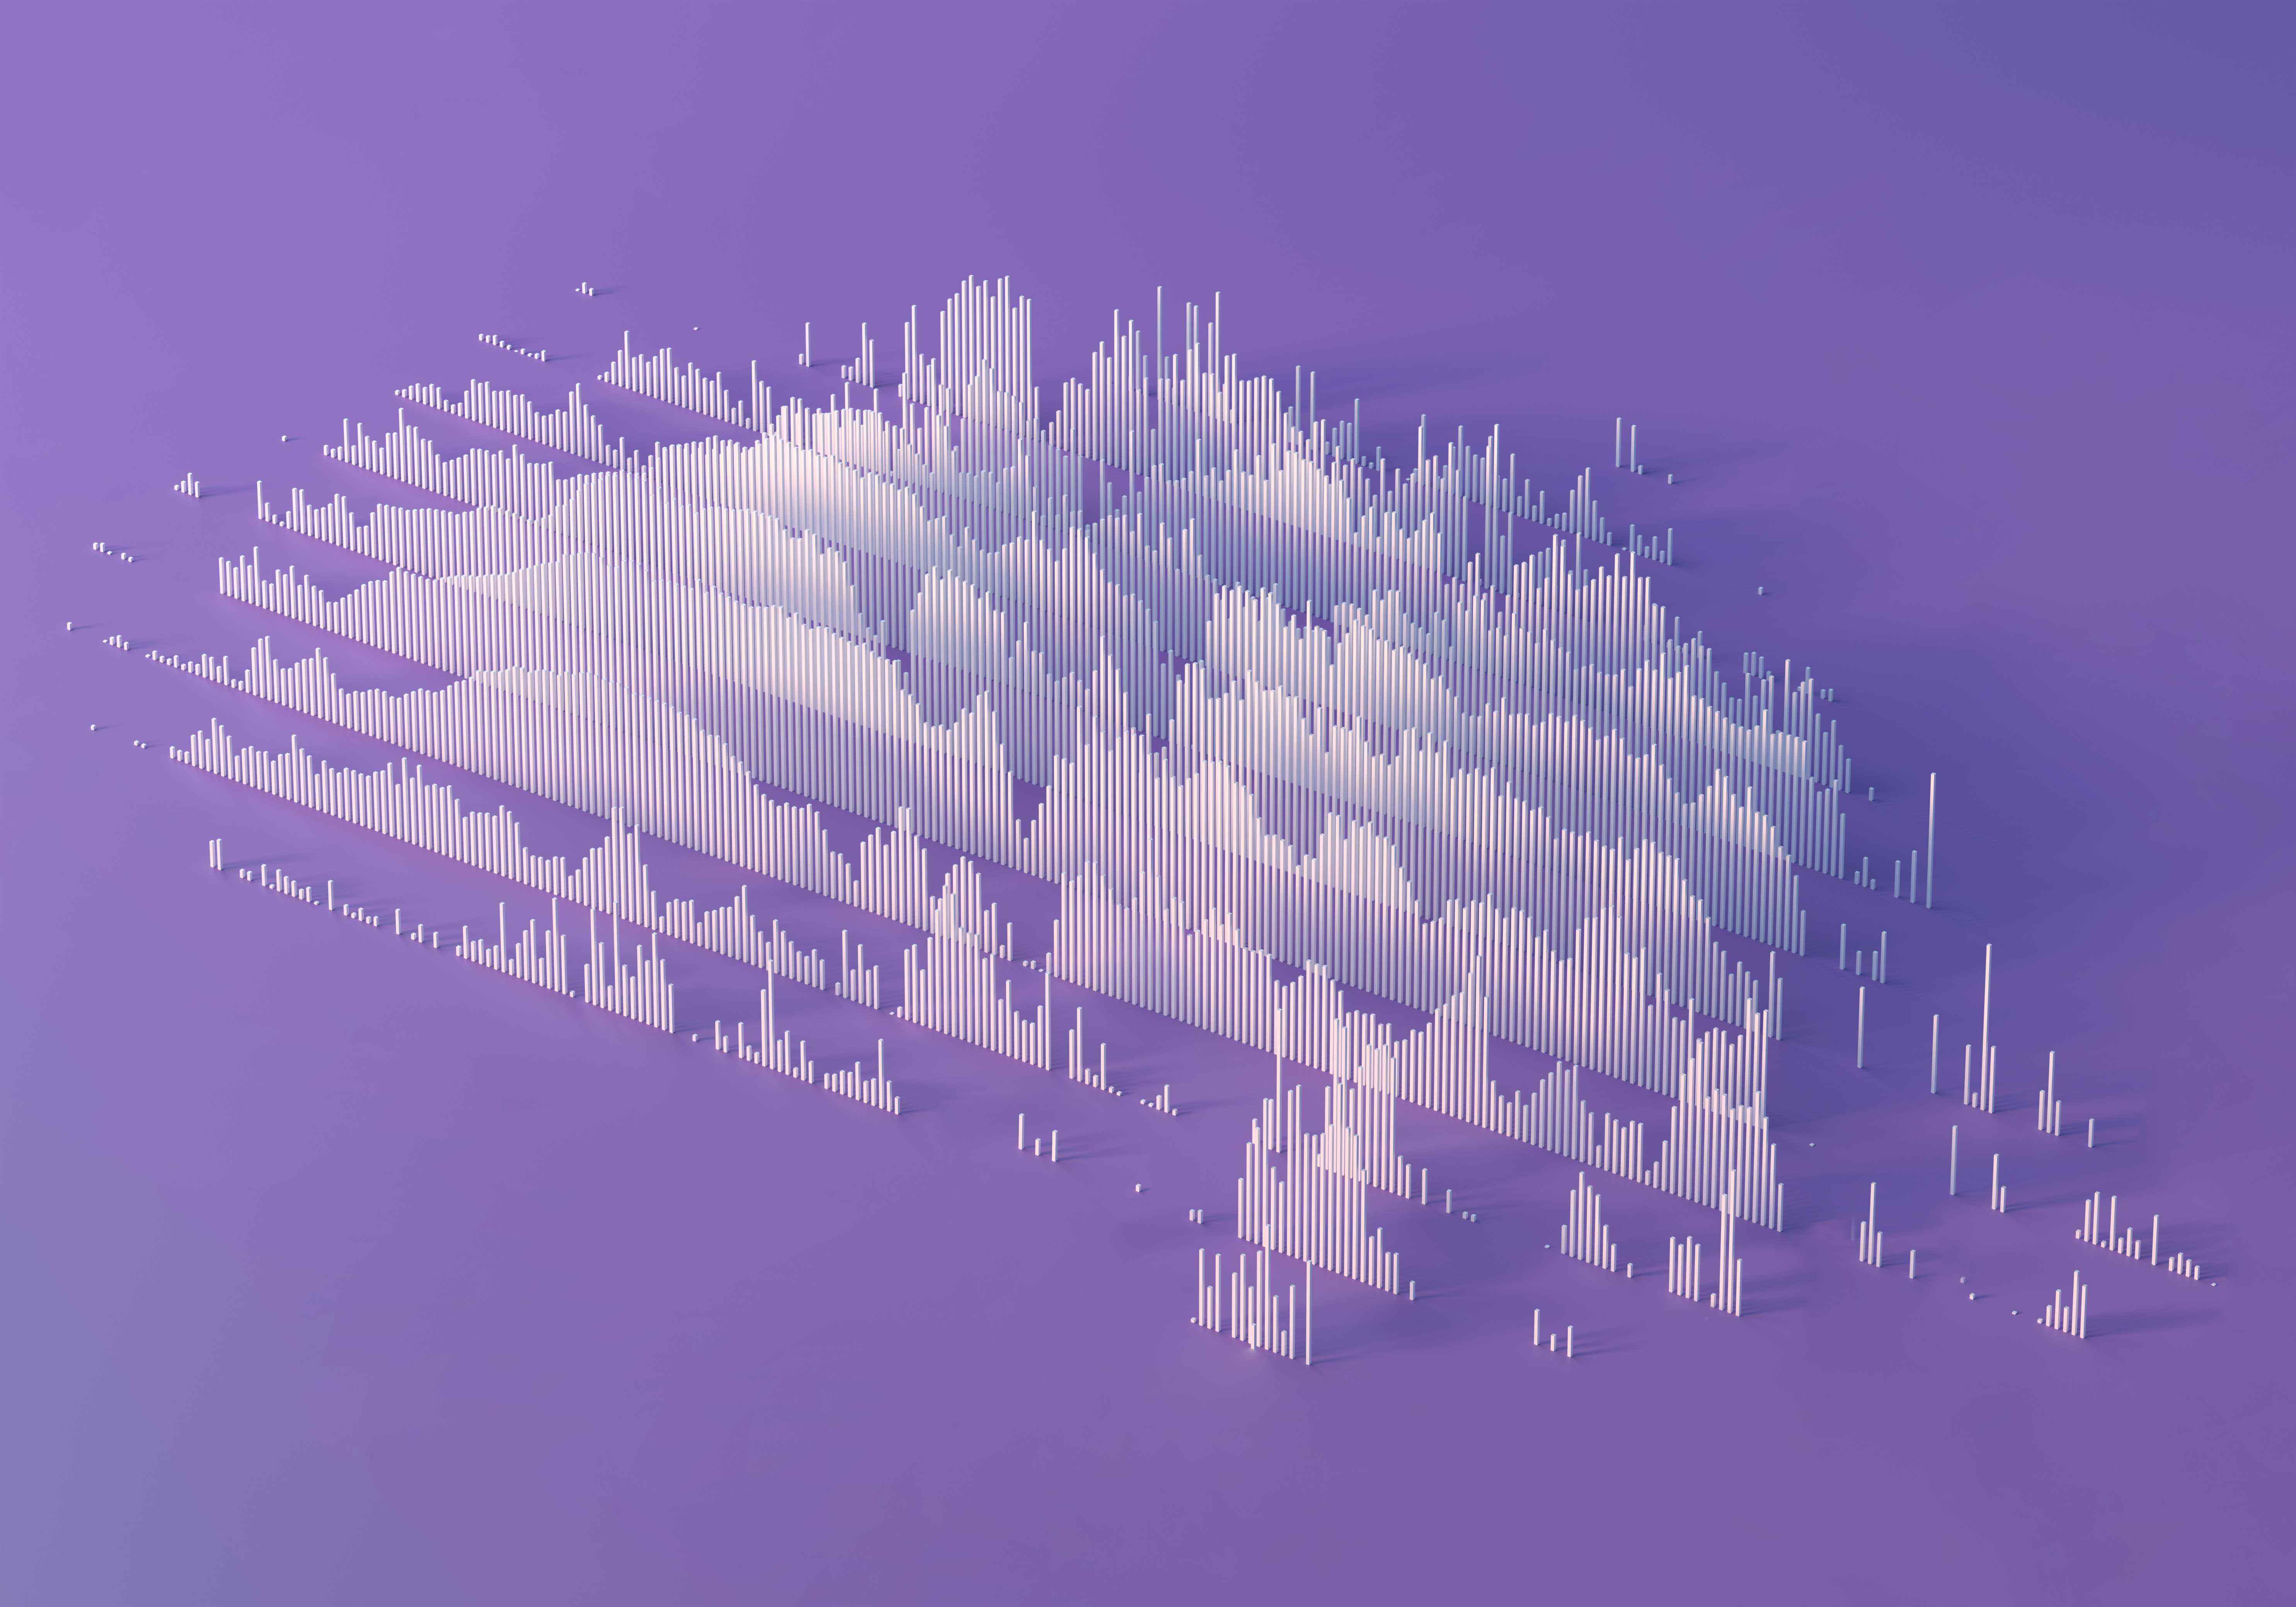 Image de visualisation de données abstraites sur fond violet.